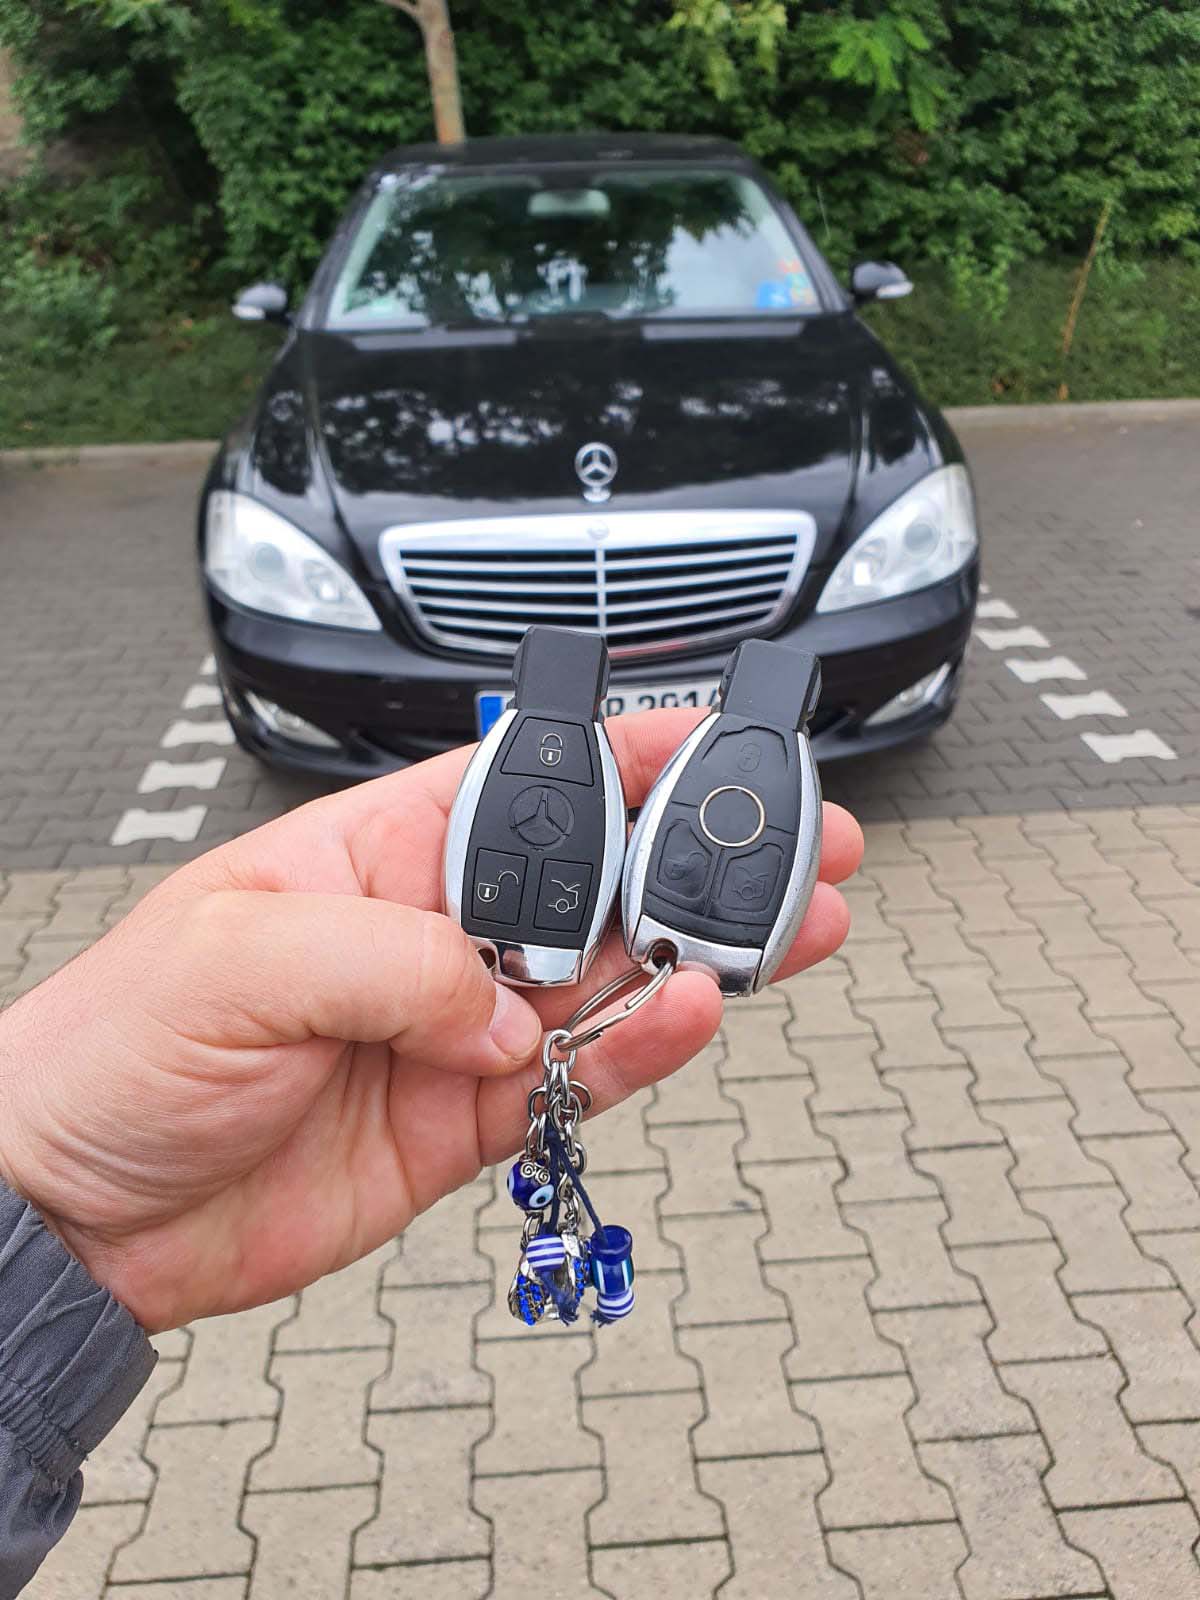 Schlüssel Mercedes E-Klasse O249611 - Van Gils Automotive